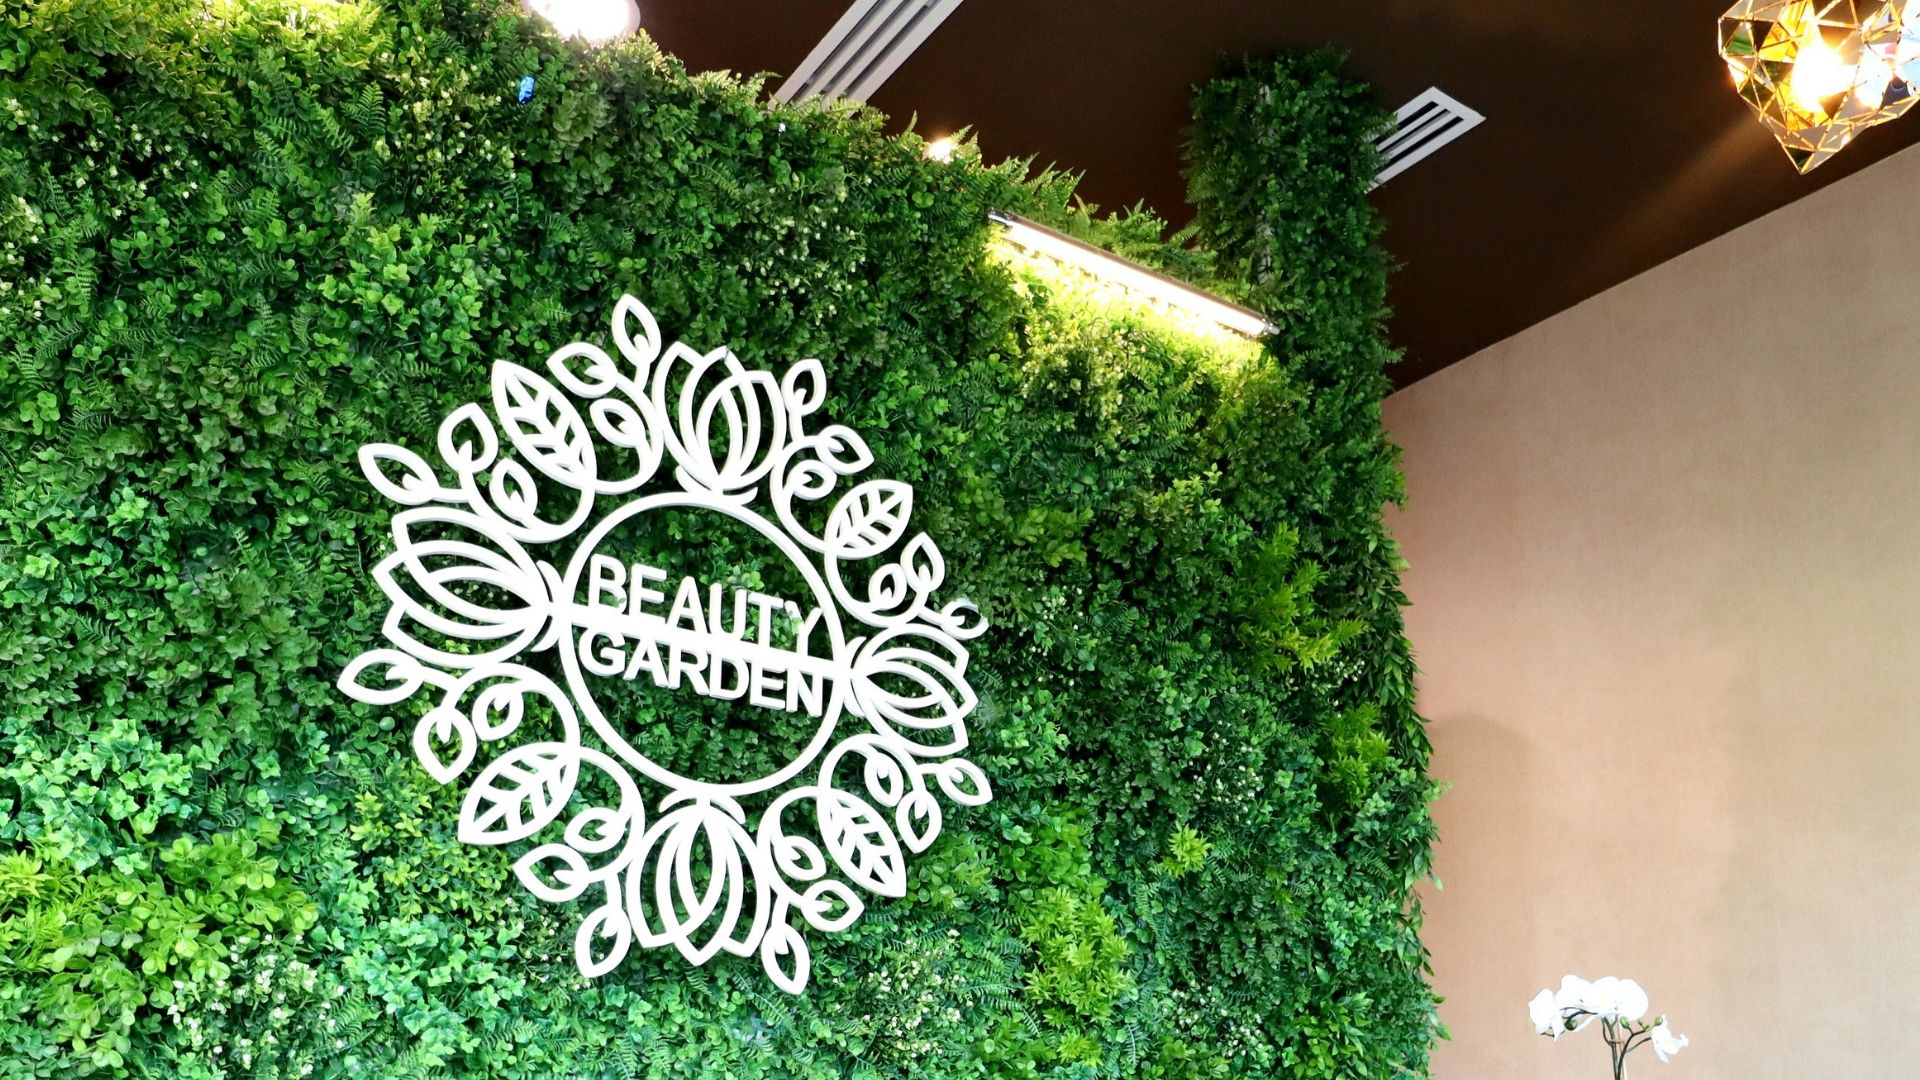 Beauty Garden Salon In Jlt Is Making All Of Our Fairytale Dreams Come True Harper S Bazaar Arabia